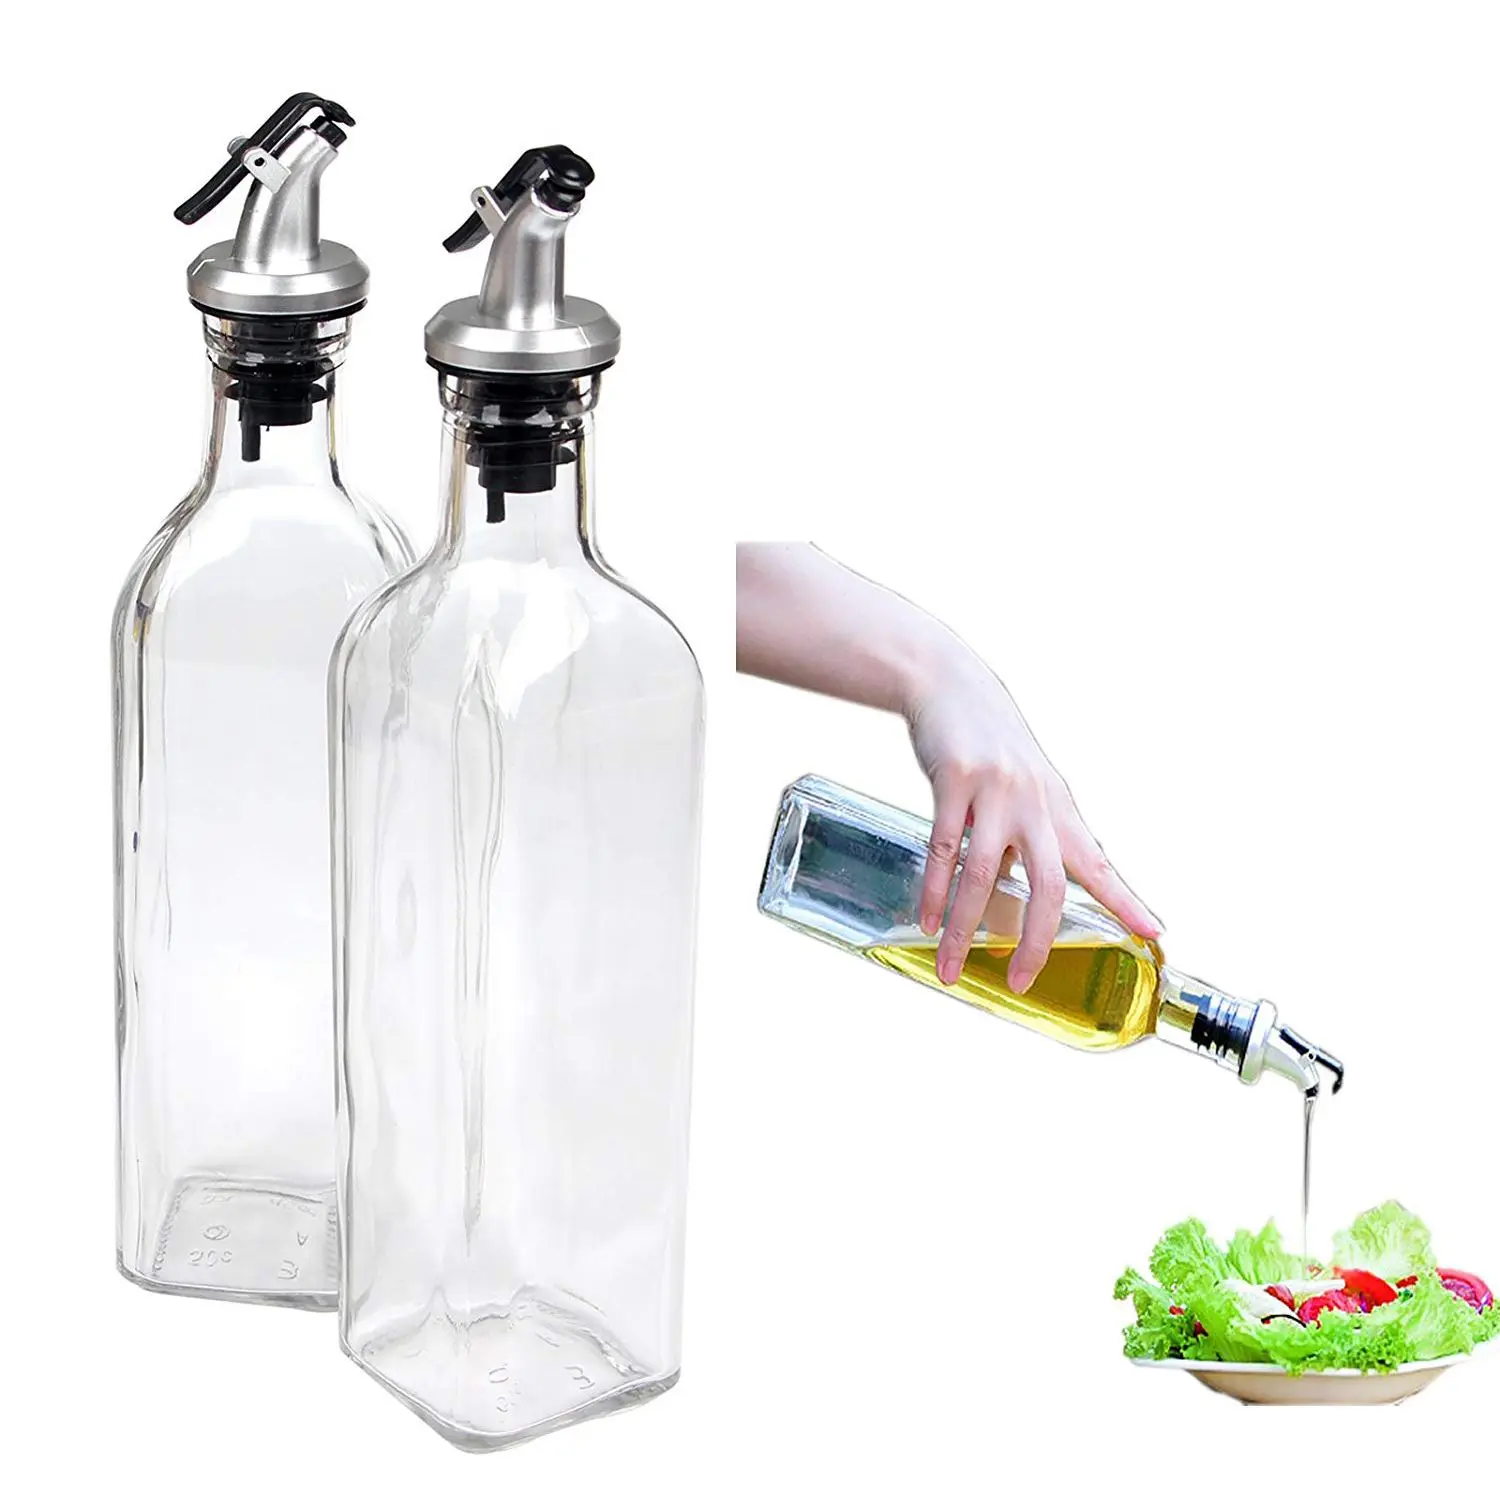 Диспенсер для масла Cruet стеклянная бутылка для контейнер для приготовления пищи носик масло диспенсер бутылка Набор для кухни, с рычагом